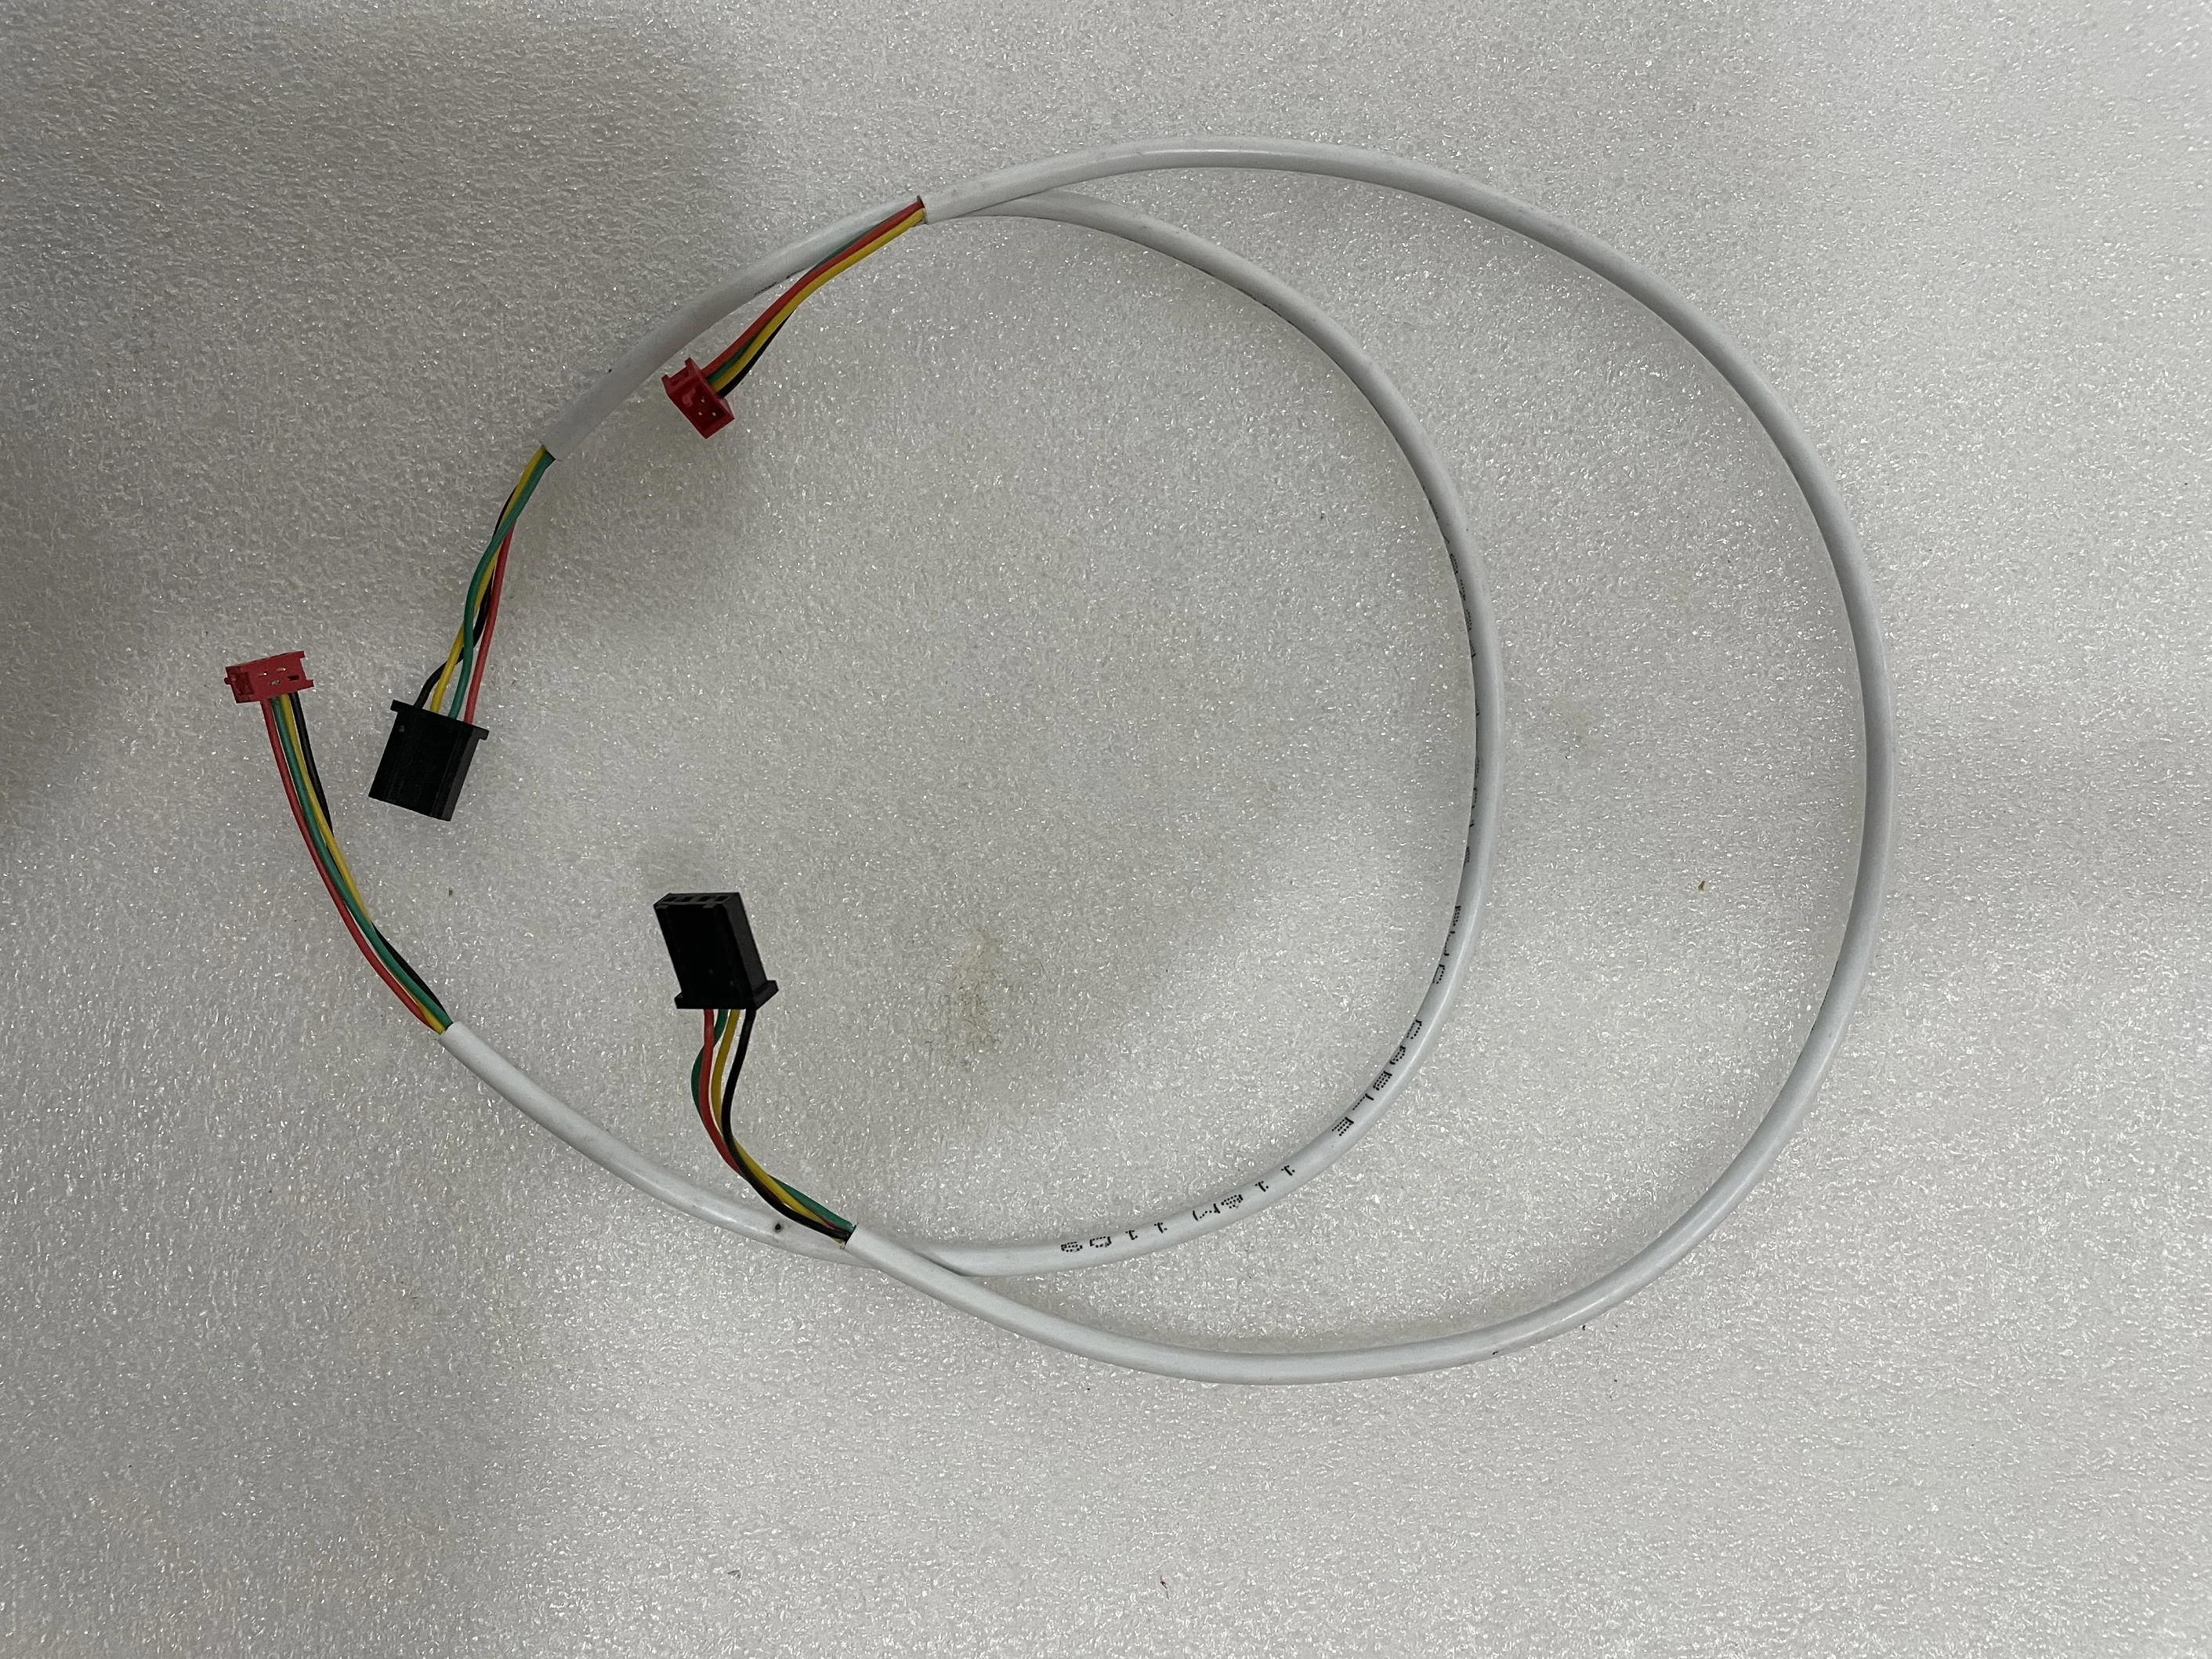 Lonati Strumpfwaren Maschine Verwenden BTSR Kabel Mit Anschlüsse MA150 CR